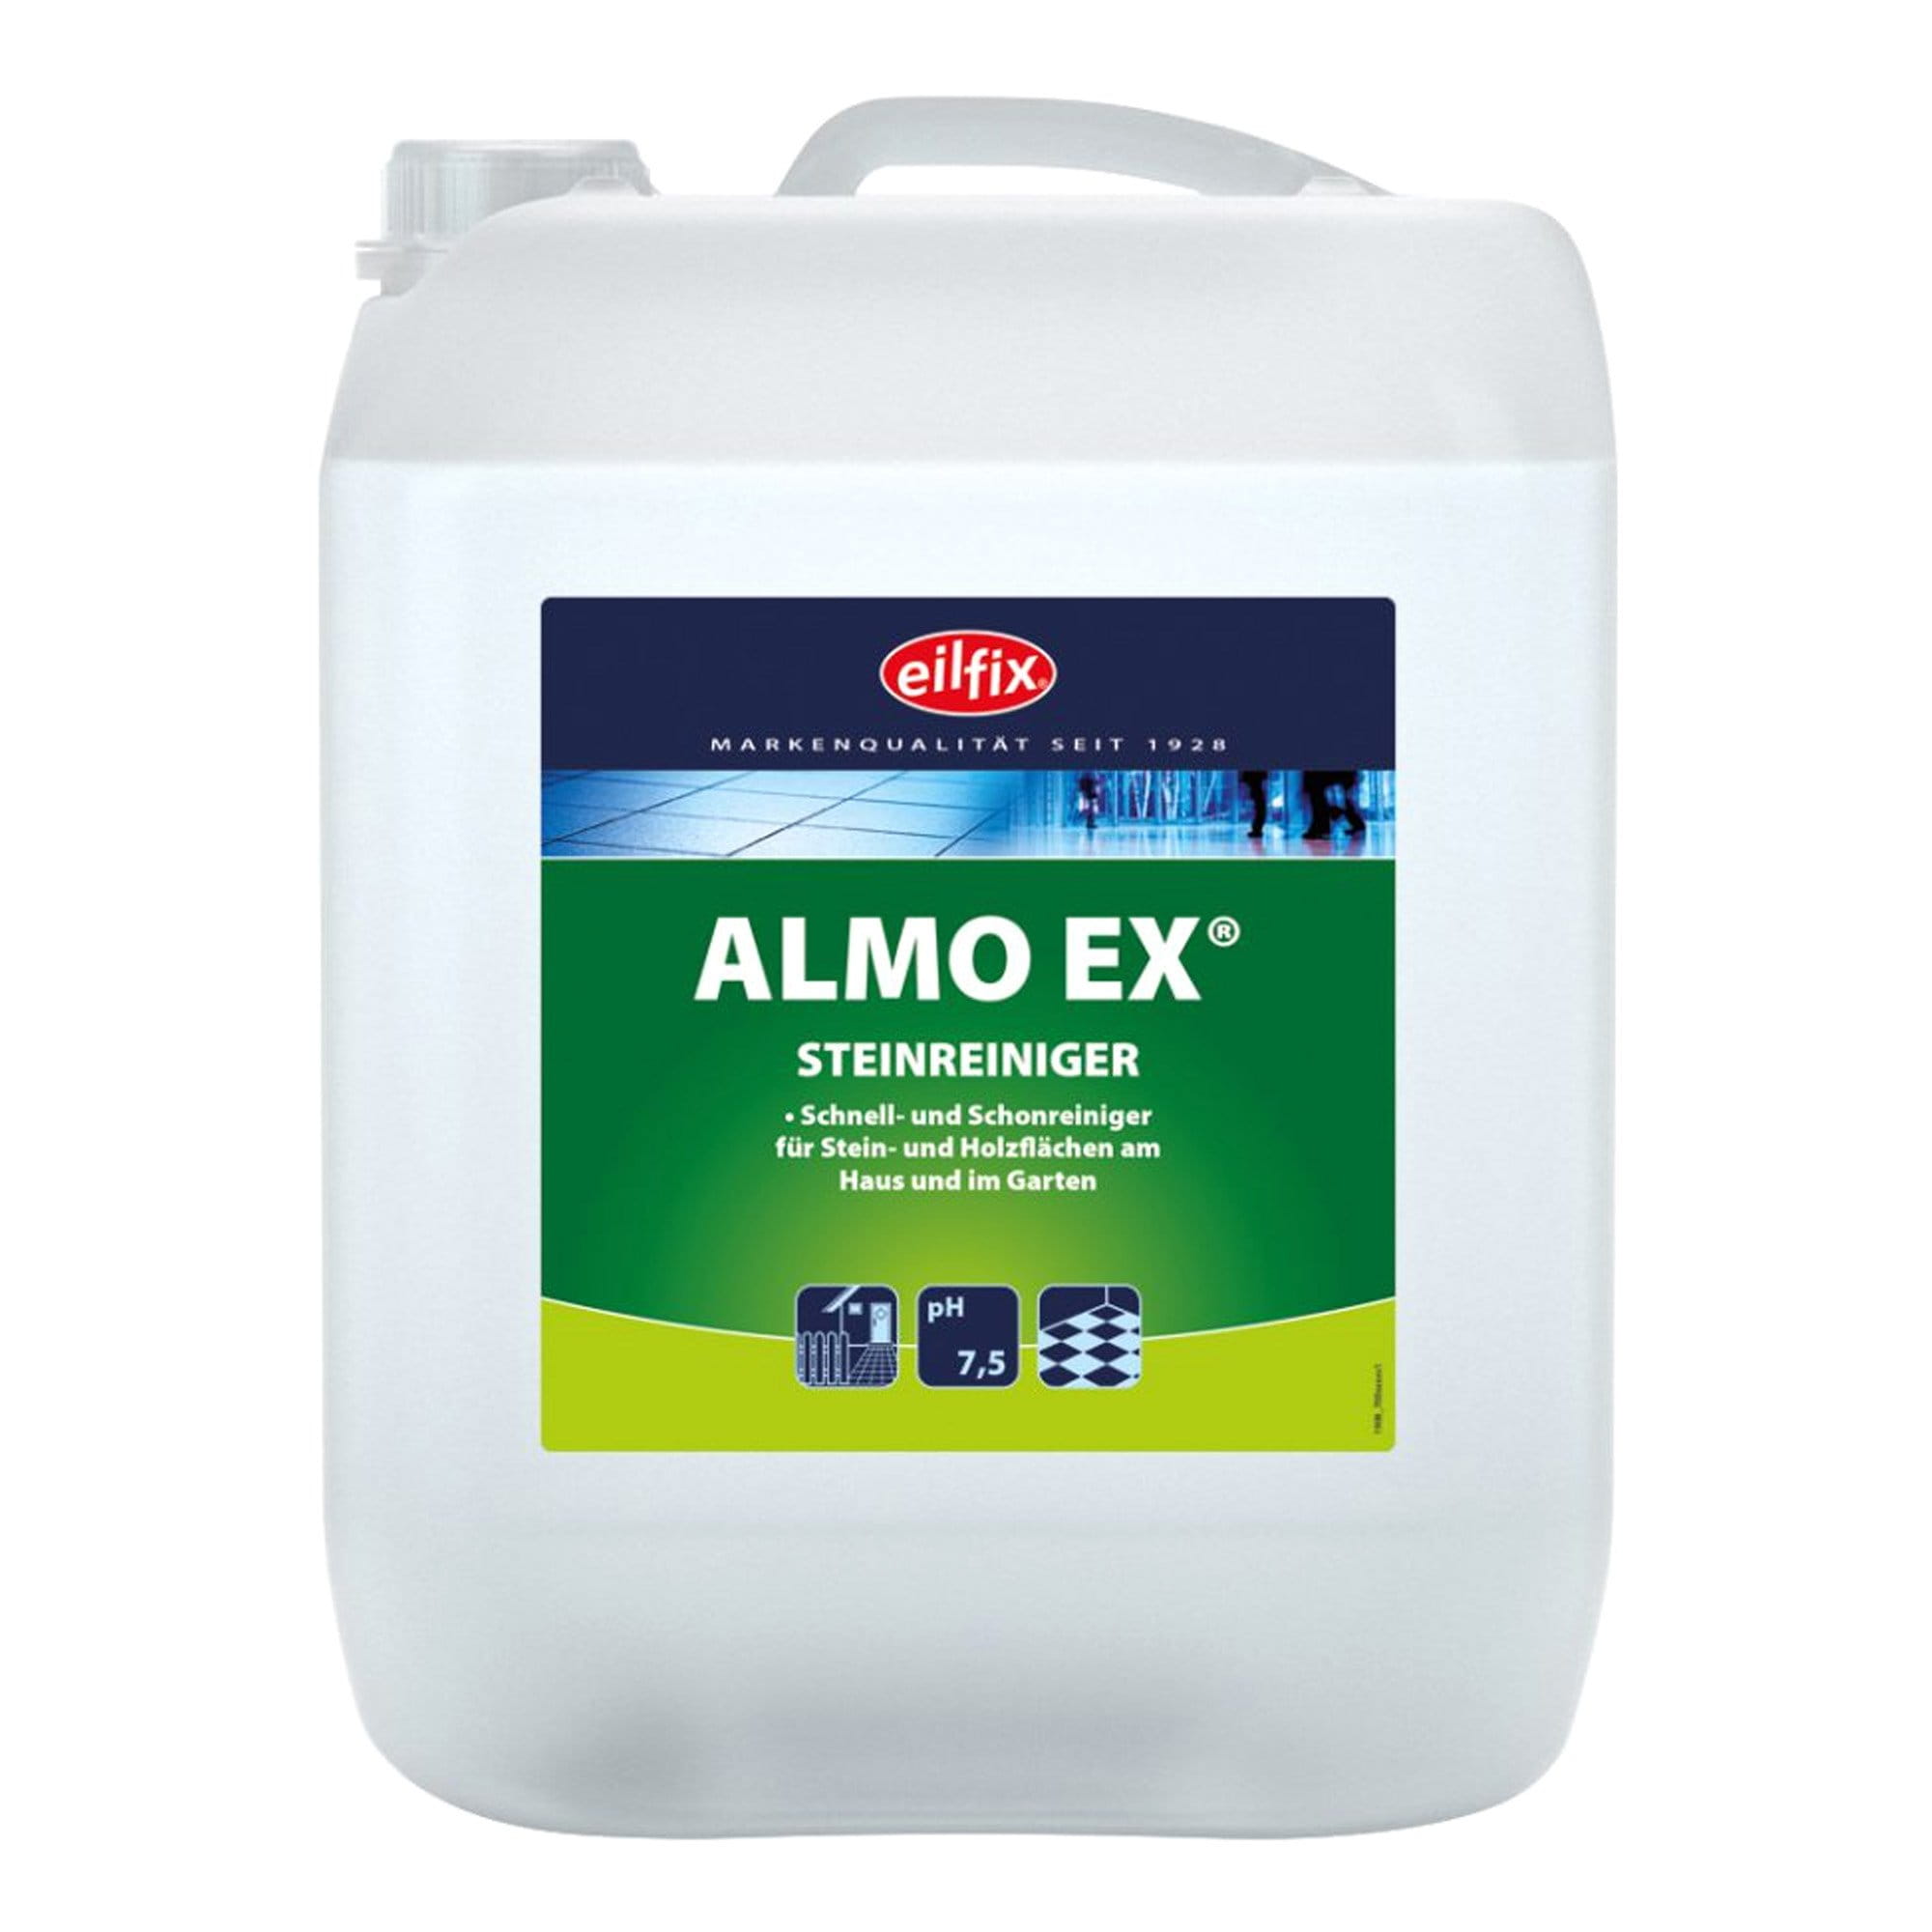 Eilfix Almo-EX Steinreiniger / Algen- Moosentferner 5 Liter Kanister 100030-005-000_1